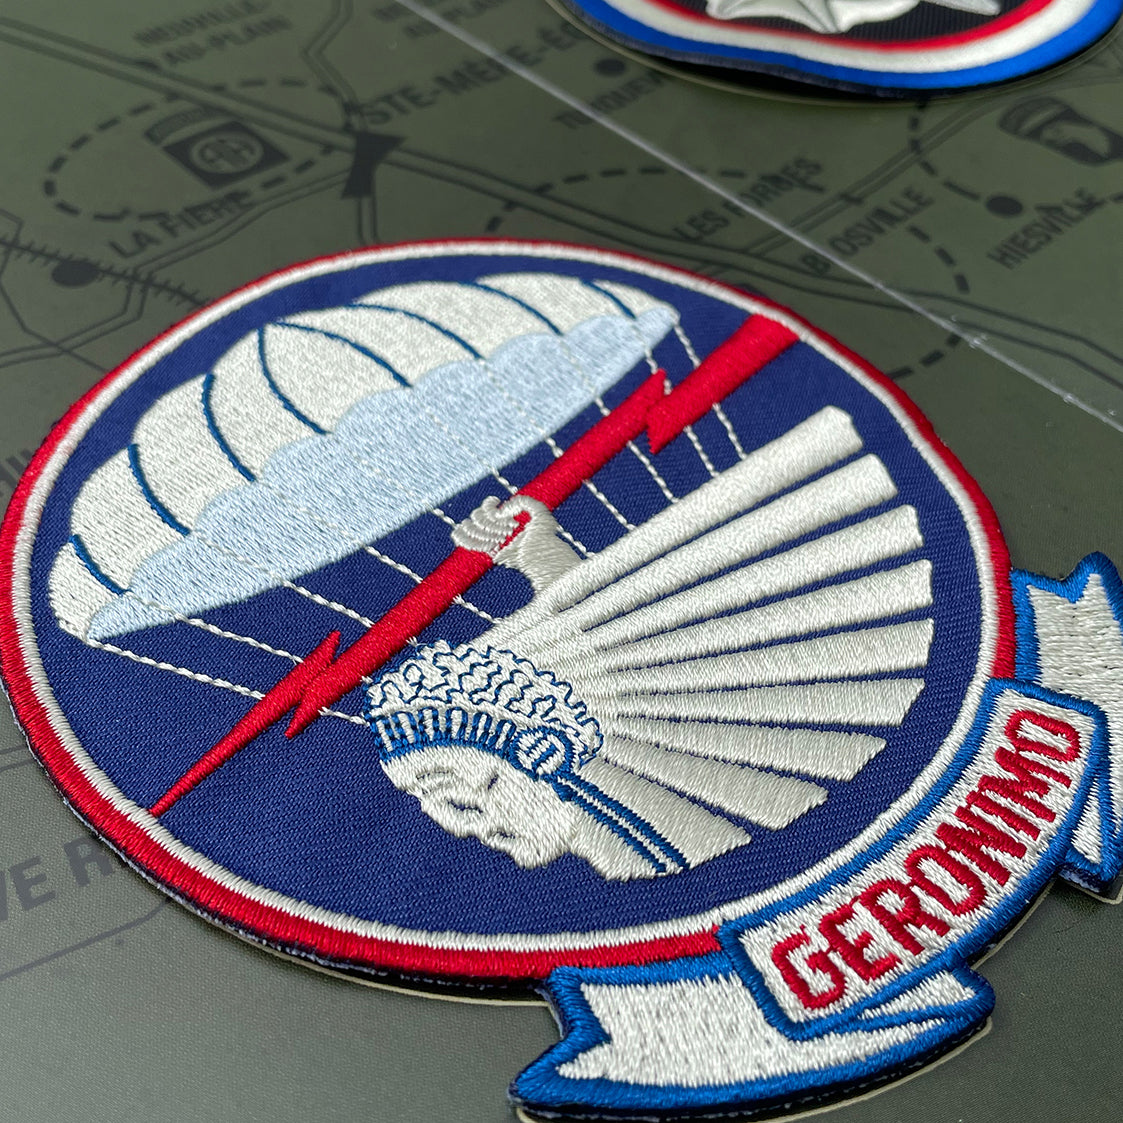 101st Airborne premium insignes booklet